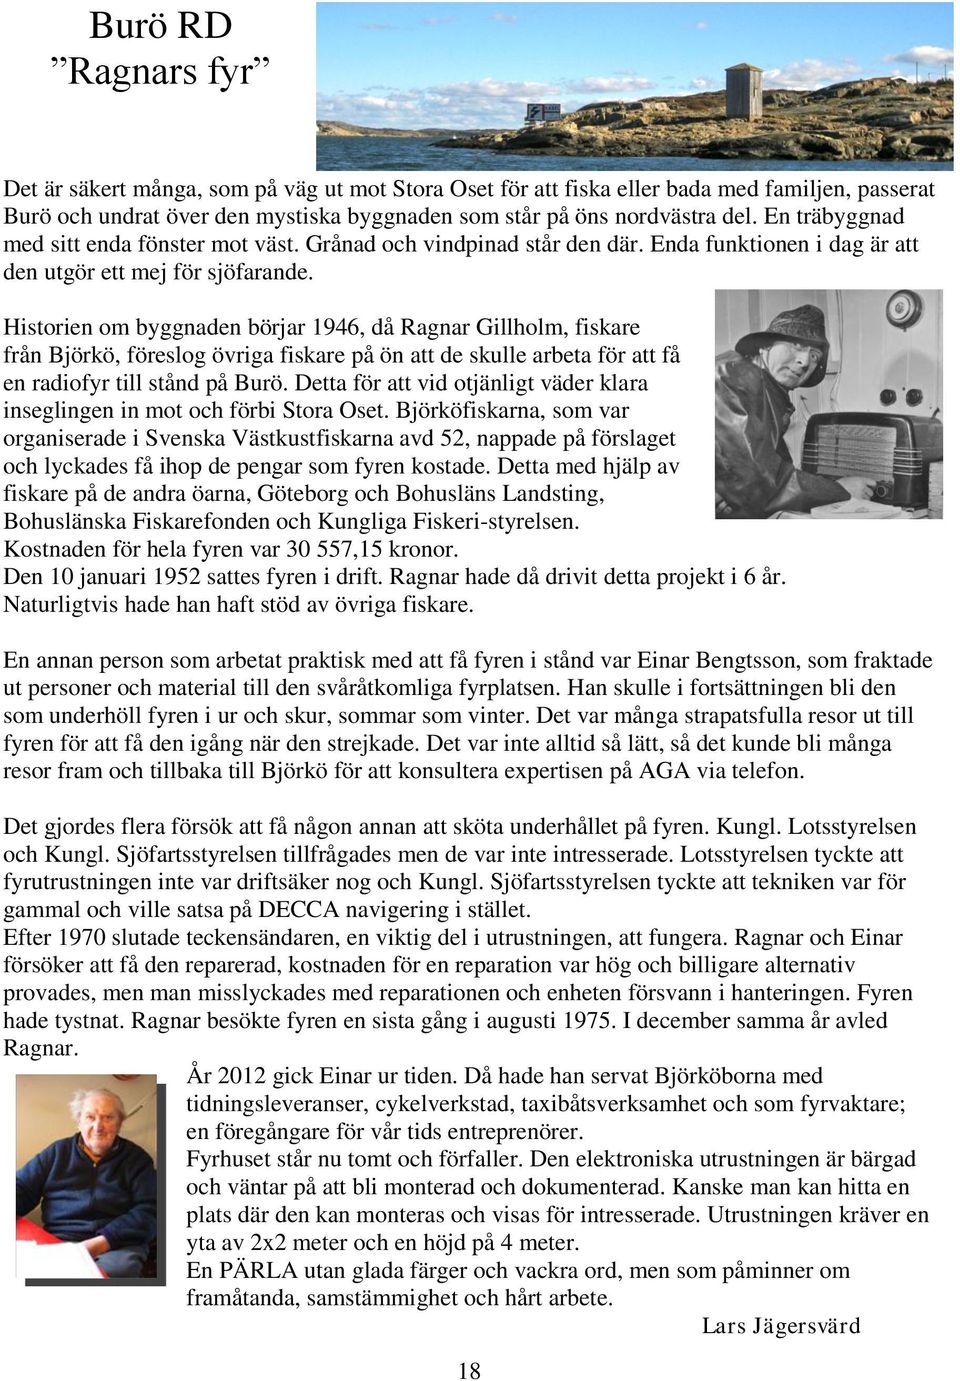 Historien om byggnaden börjar 1946, då Ragnar Gillholm, fiskare från Björkö, föreslog övriga fiskare på ön att de skulle arbeta för att få en radiofyr till stånd på Burö.